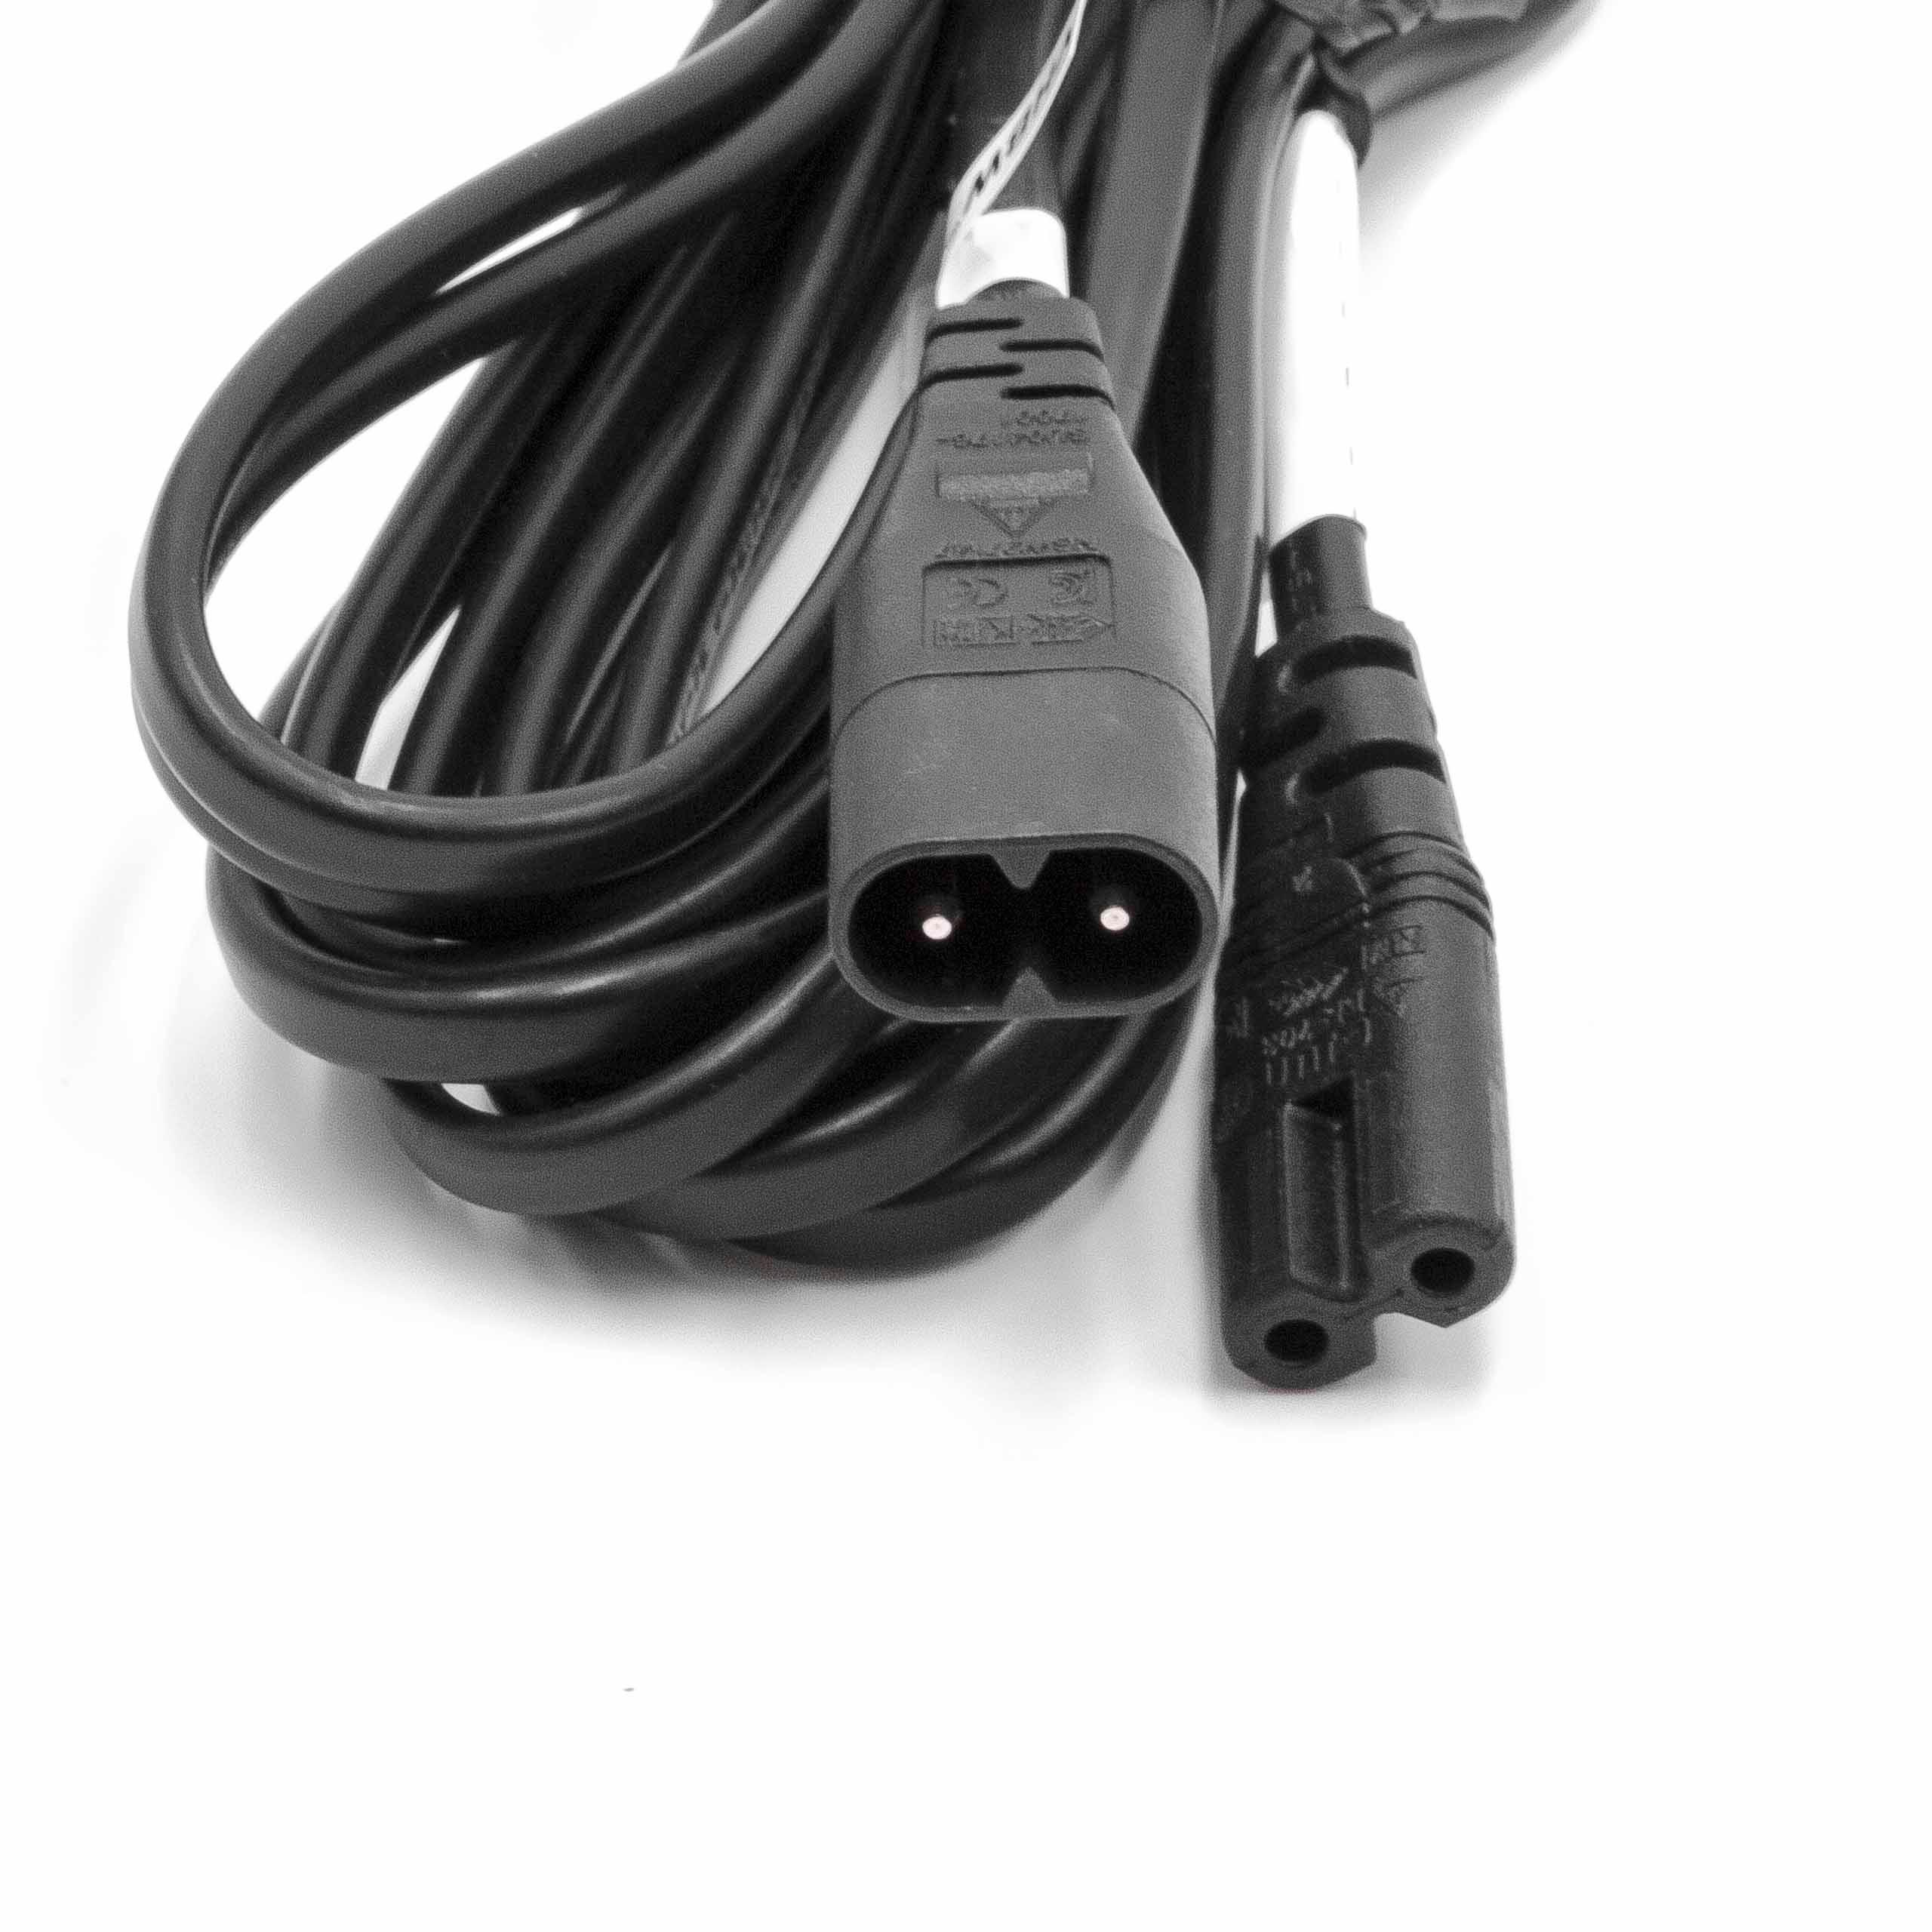 C8 / C7 Câble d'alimentation Câble de rallonge Prise femelle à fiche3m pour le petit électroménager